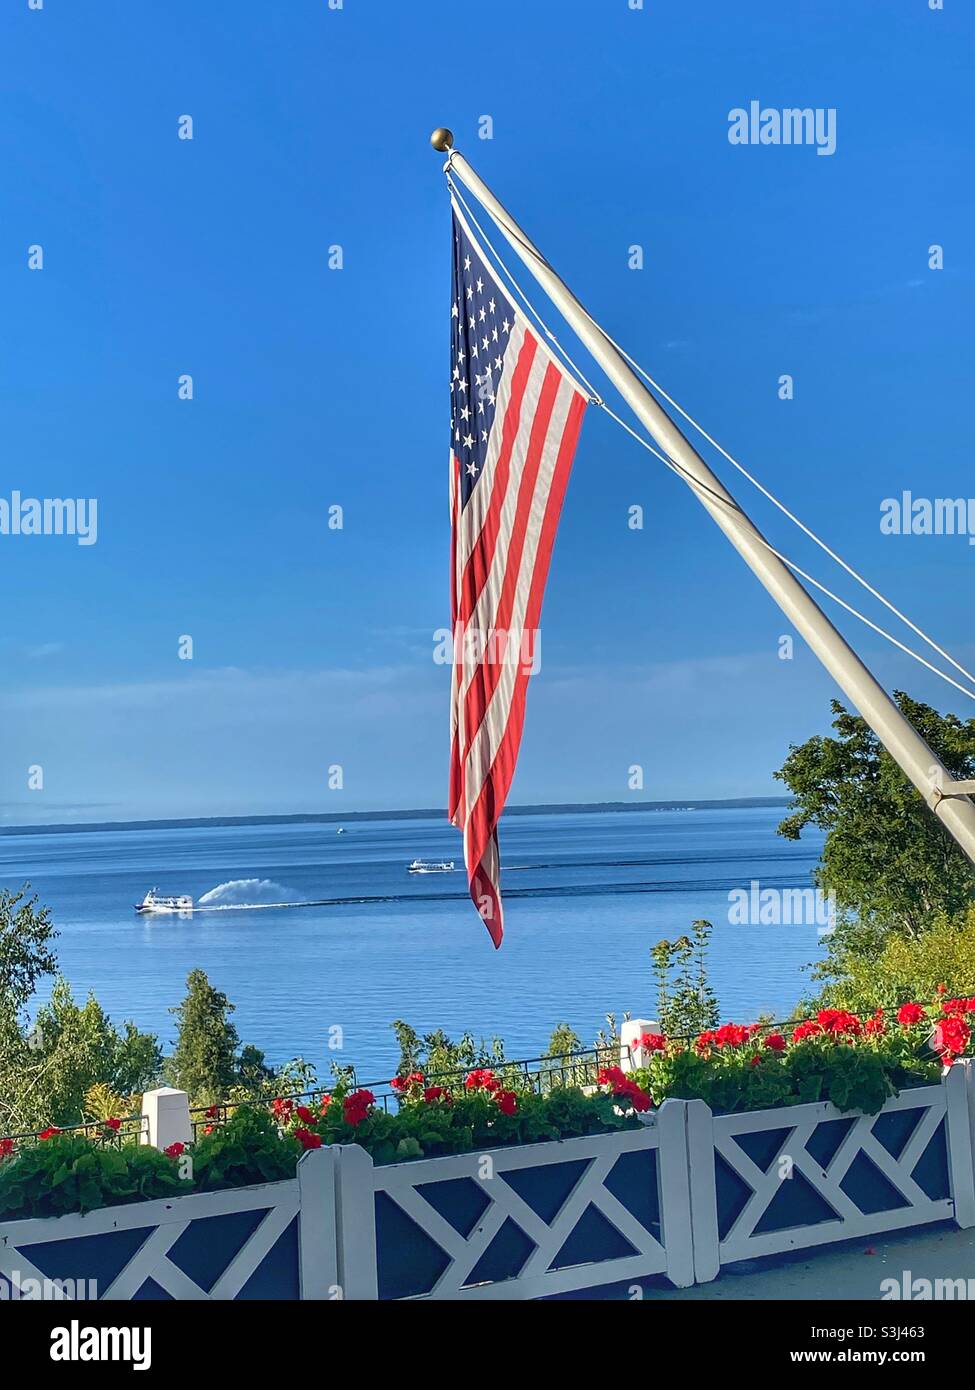 Bandiera americana vista dal ponte del Grand Hotel sull'isola di Mackinac. Il ponte Mackinac e il traghetto sono sullo sfondo Foto Stock